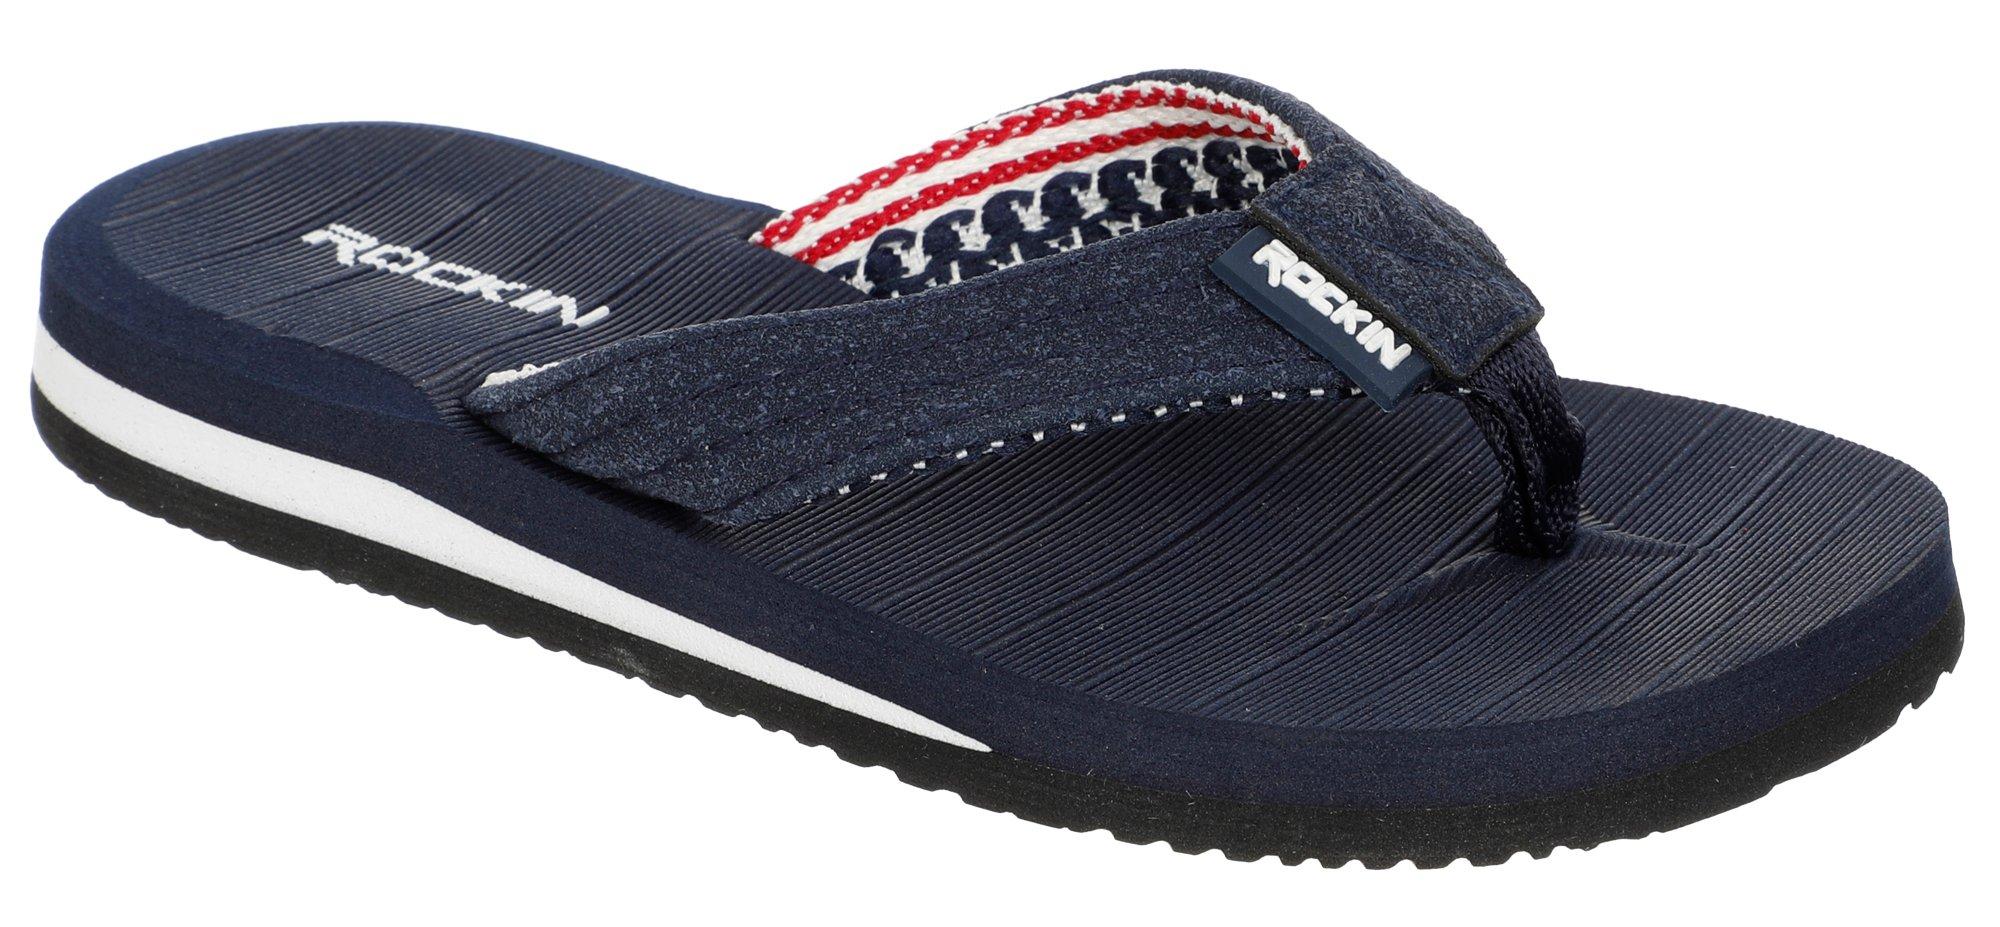 Boys Americana Flip Flops - Navy